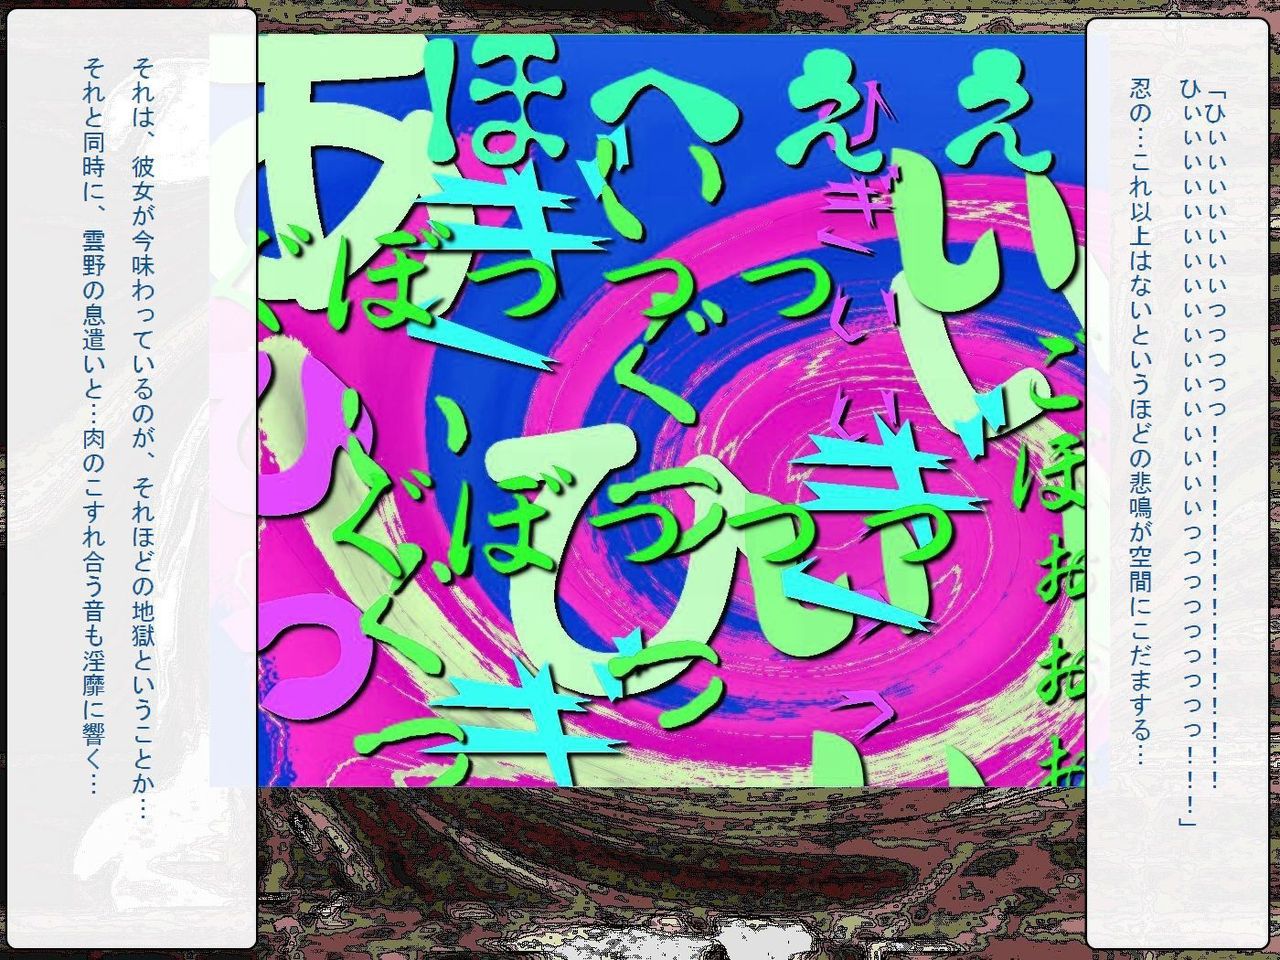 [Teito Bouei Ryodan] RTK Book Ver. 8.4: “‘Tsuki’ Monogatari Saishuu-banashi ‘Tsubasa, soshite... Mayoi maimai’” (<Monogatari> Series) [帝都防衛旅団] RTKBOOK Ver.8.4 「『憑き』物語 最終話 『ひ〇ぎ倶楽部』」 (〈物語〉シリーズ) 338